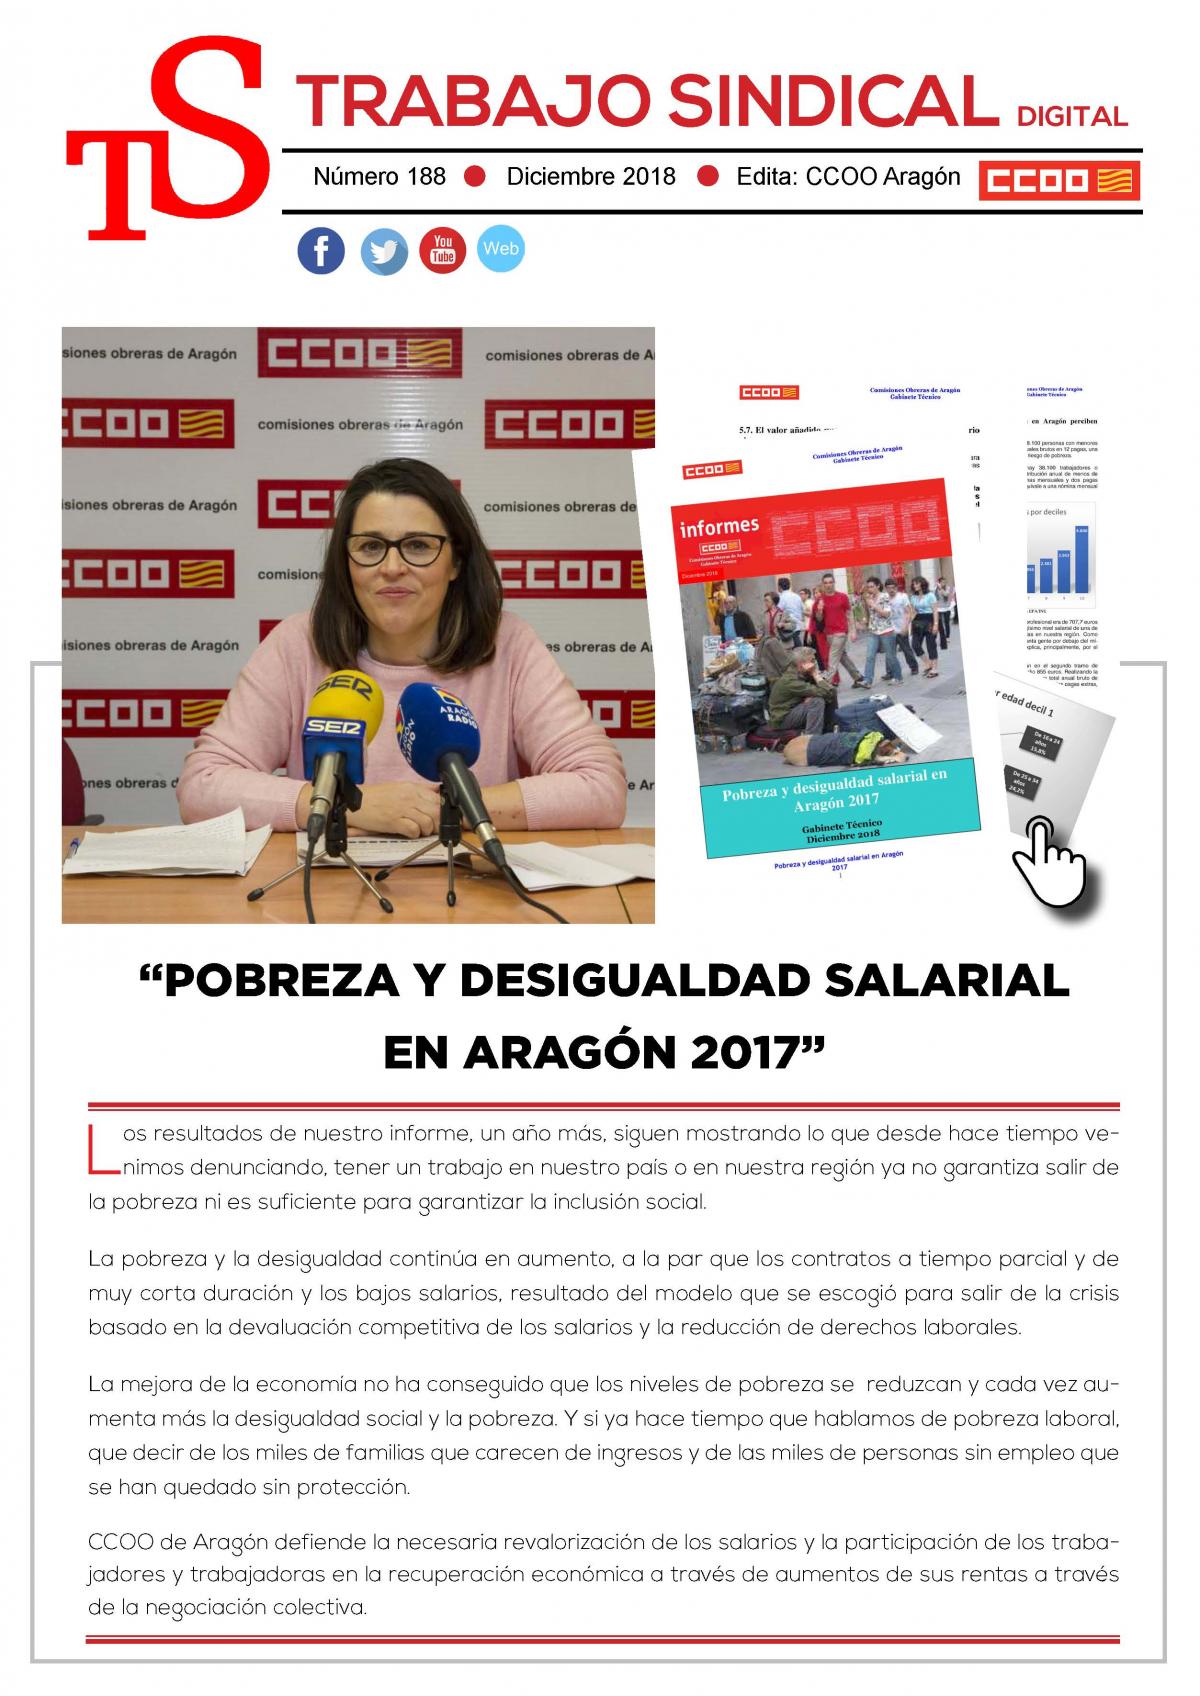 Trabajo Sindical 188 - Pobreza y desigualdad salarial 2017.